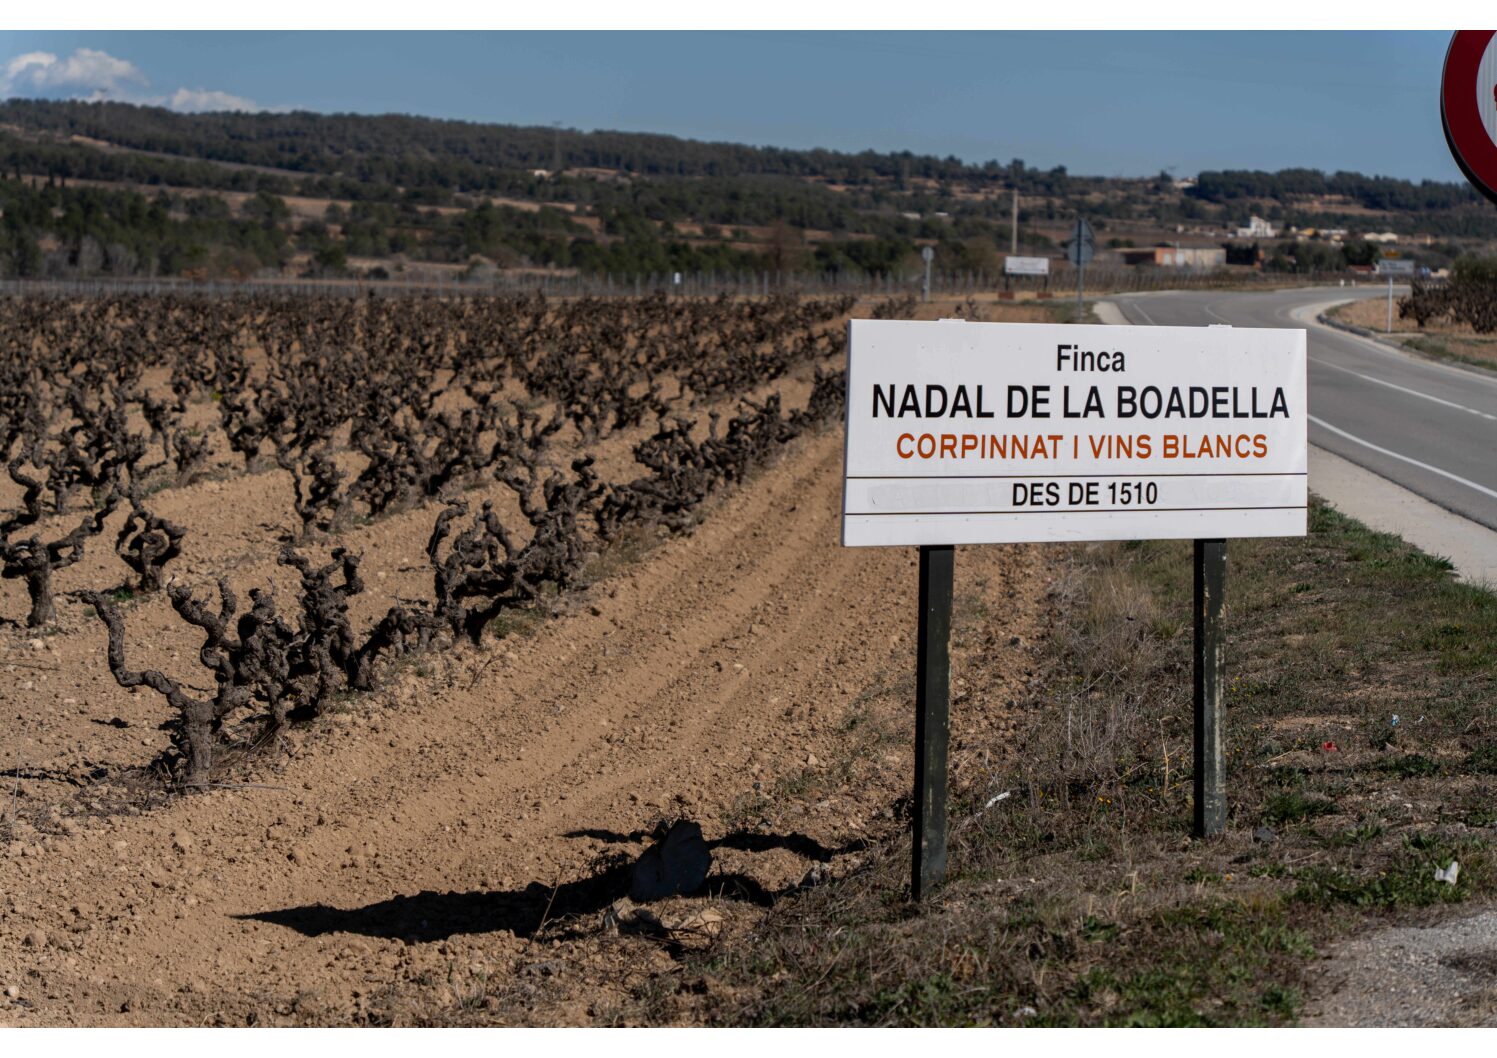 01 mars 2024 Penedes, Espagne CHANGEMENT CLIMATIQUE Penedes, Espagne-"La sécheresse affecte les vignobles de Penedès. Les vignobles de la région viticole de Penedès souffrent de la grave sécheresse que connaît la Catalogne. (C) SIPA